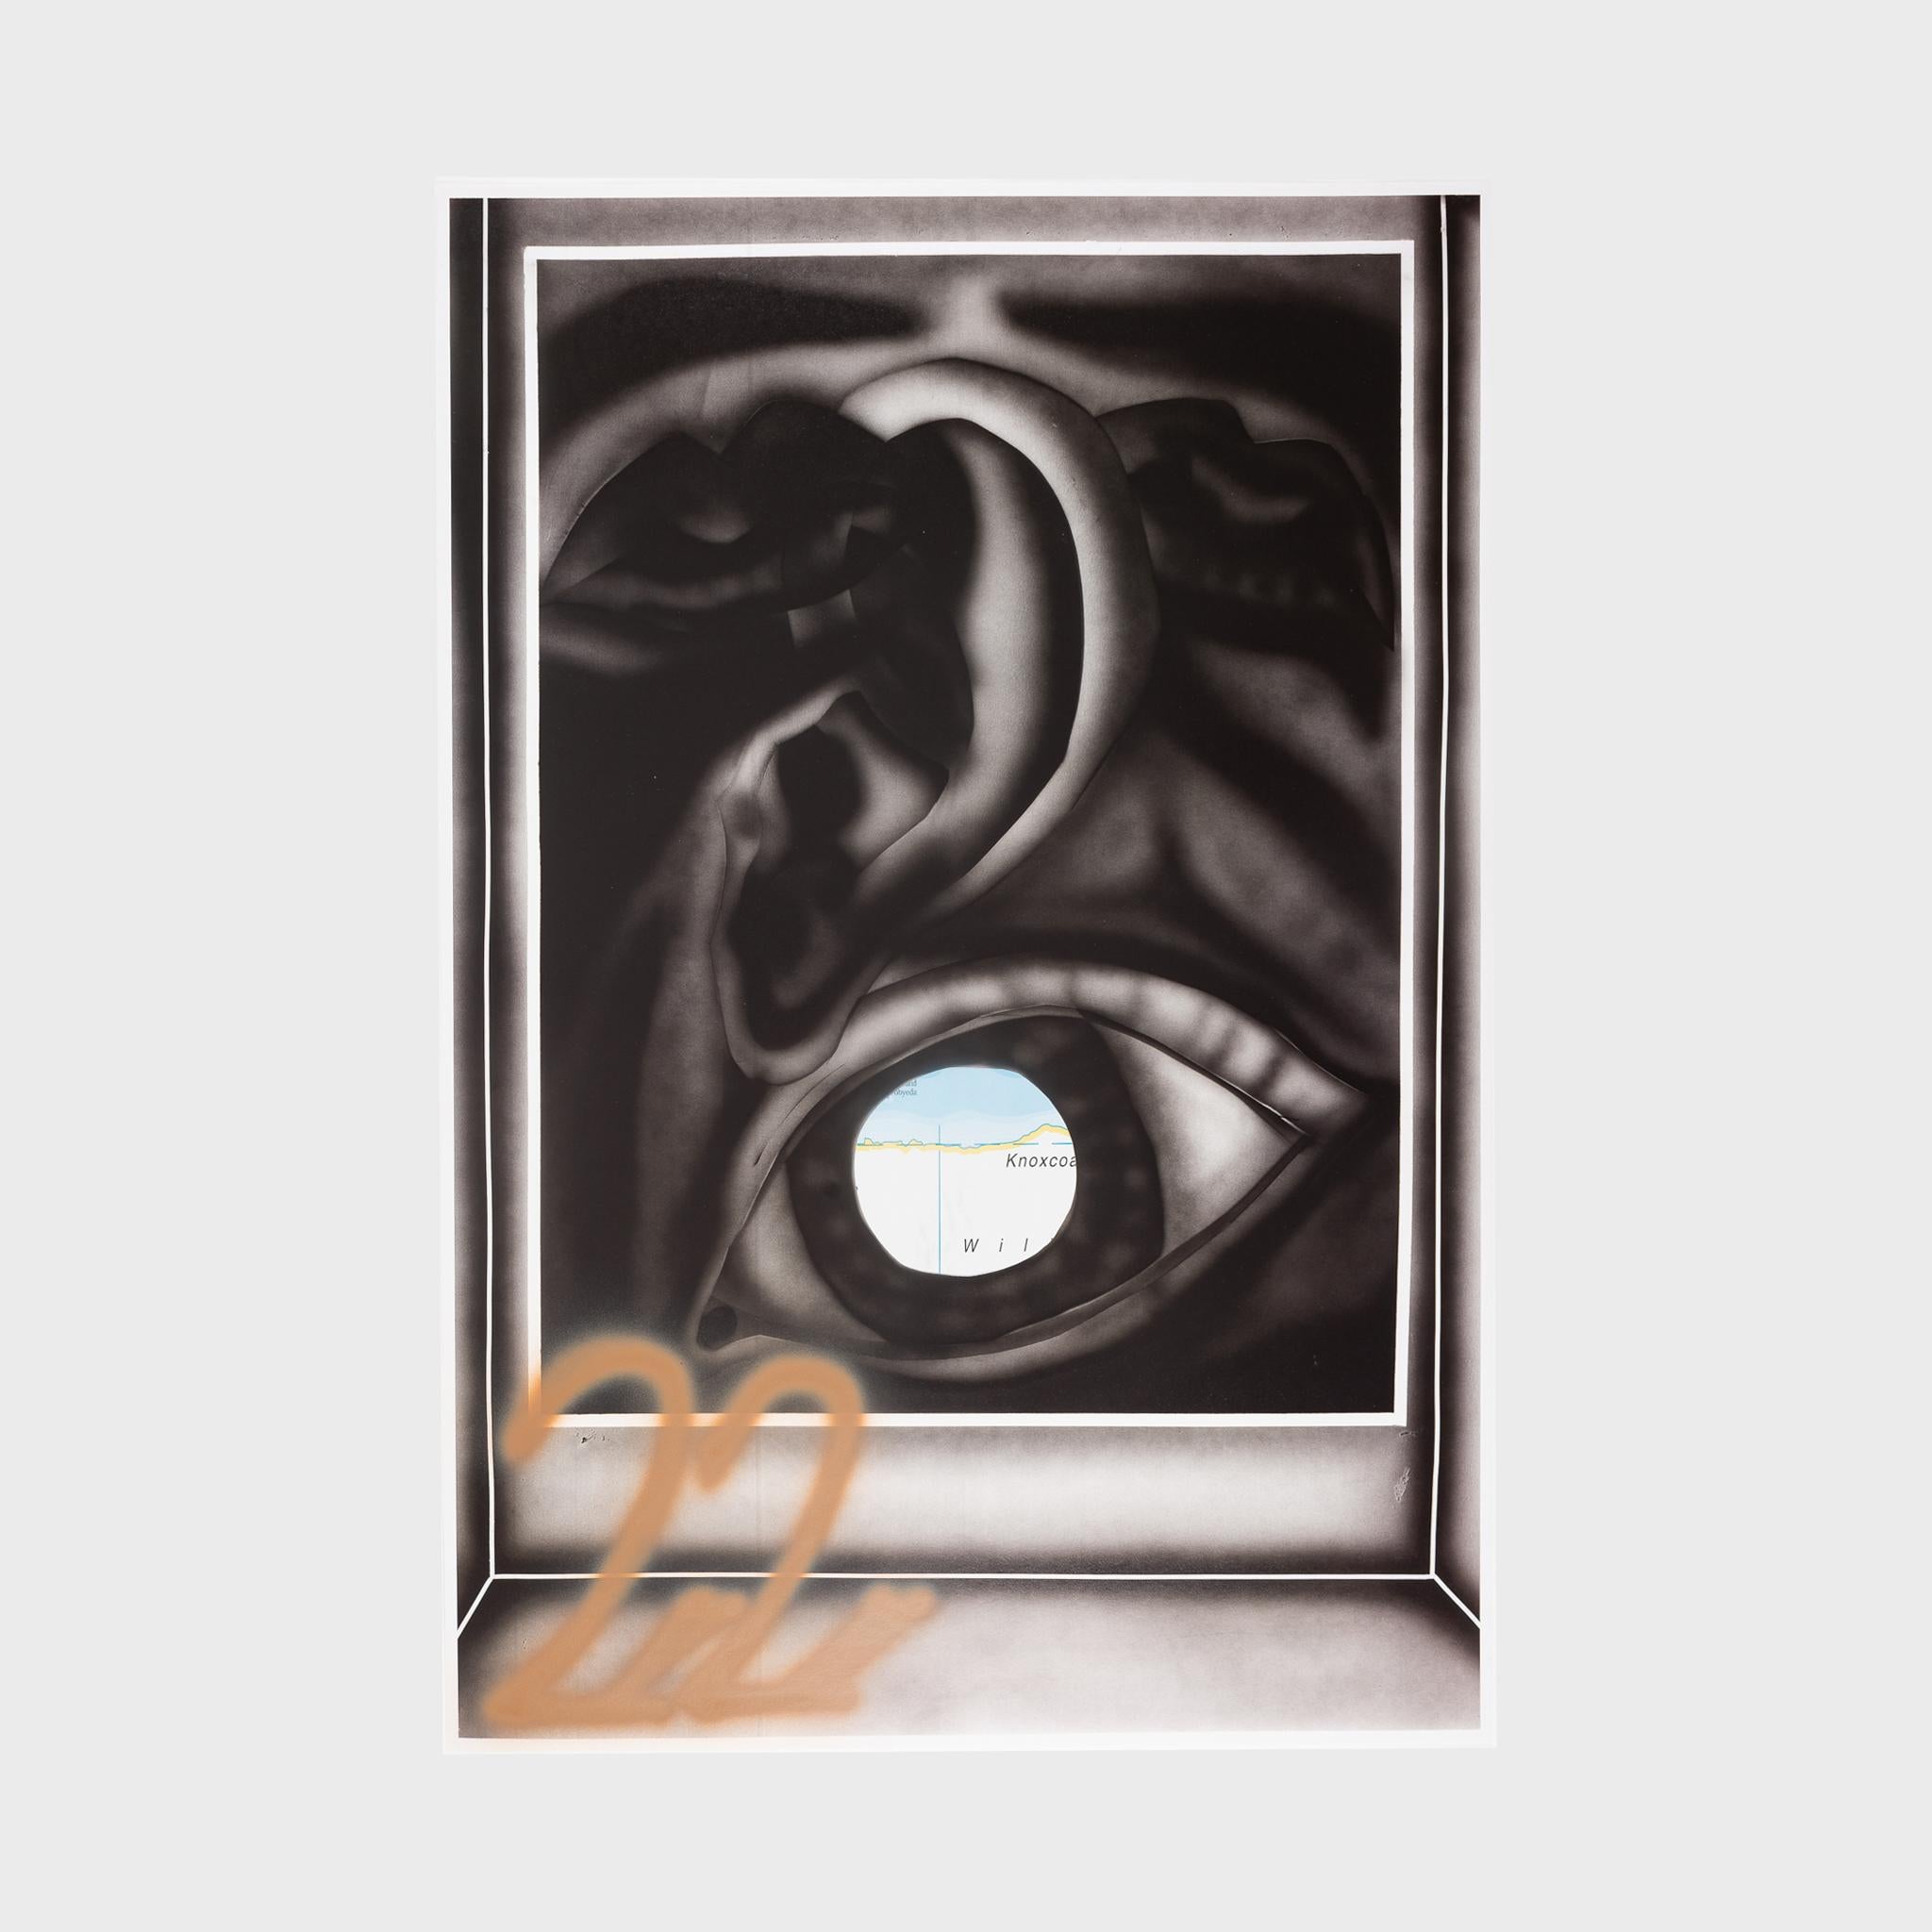 Jana Euler Abstract Print - Die Individualisierte Editionsnummer Besichtigt Das Subjective Fenster (Bild) Un